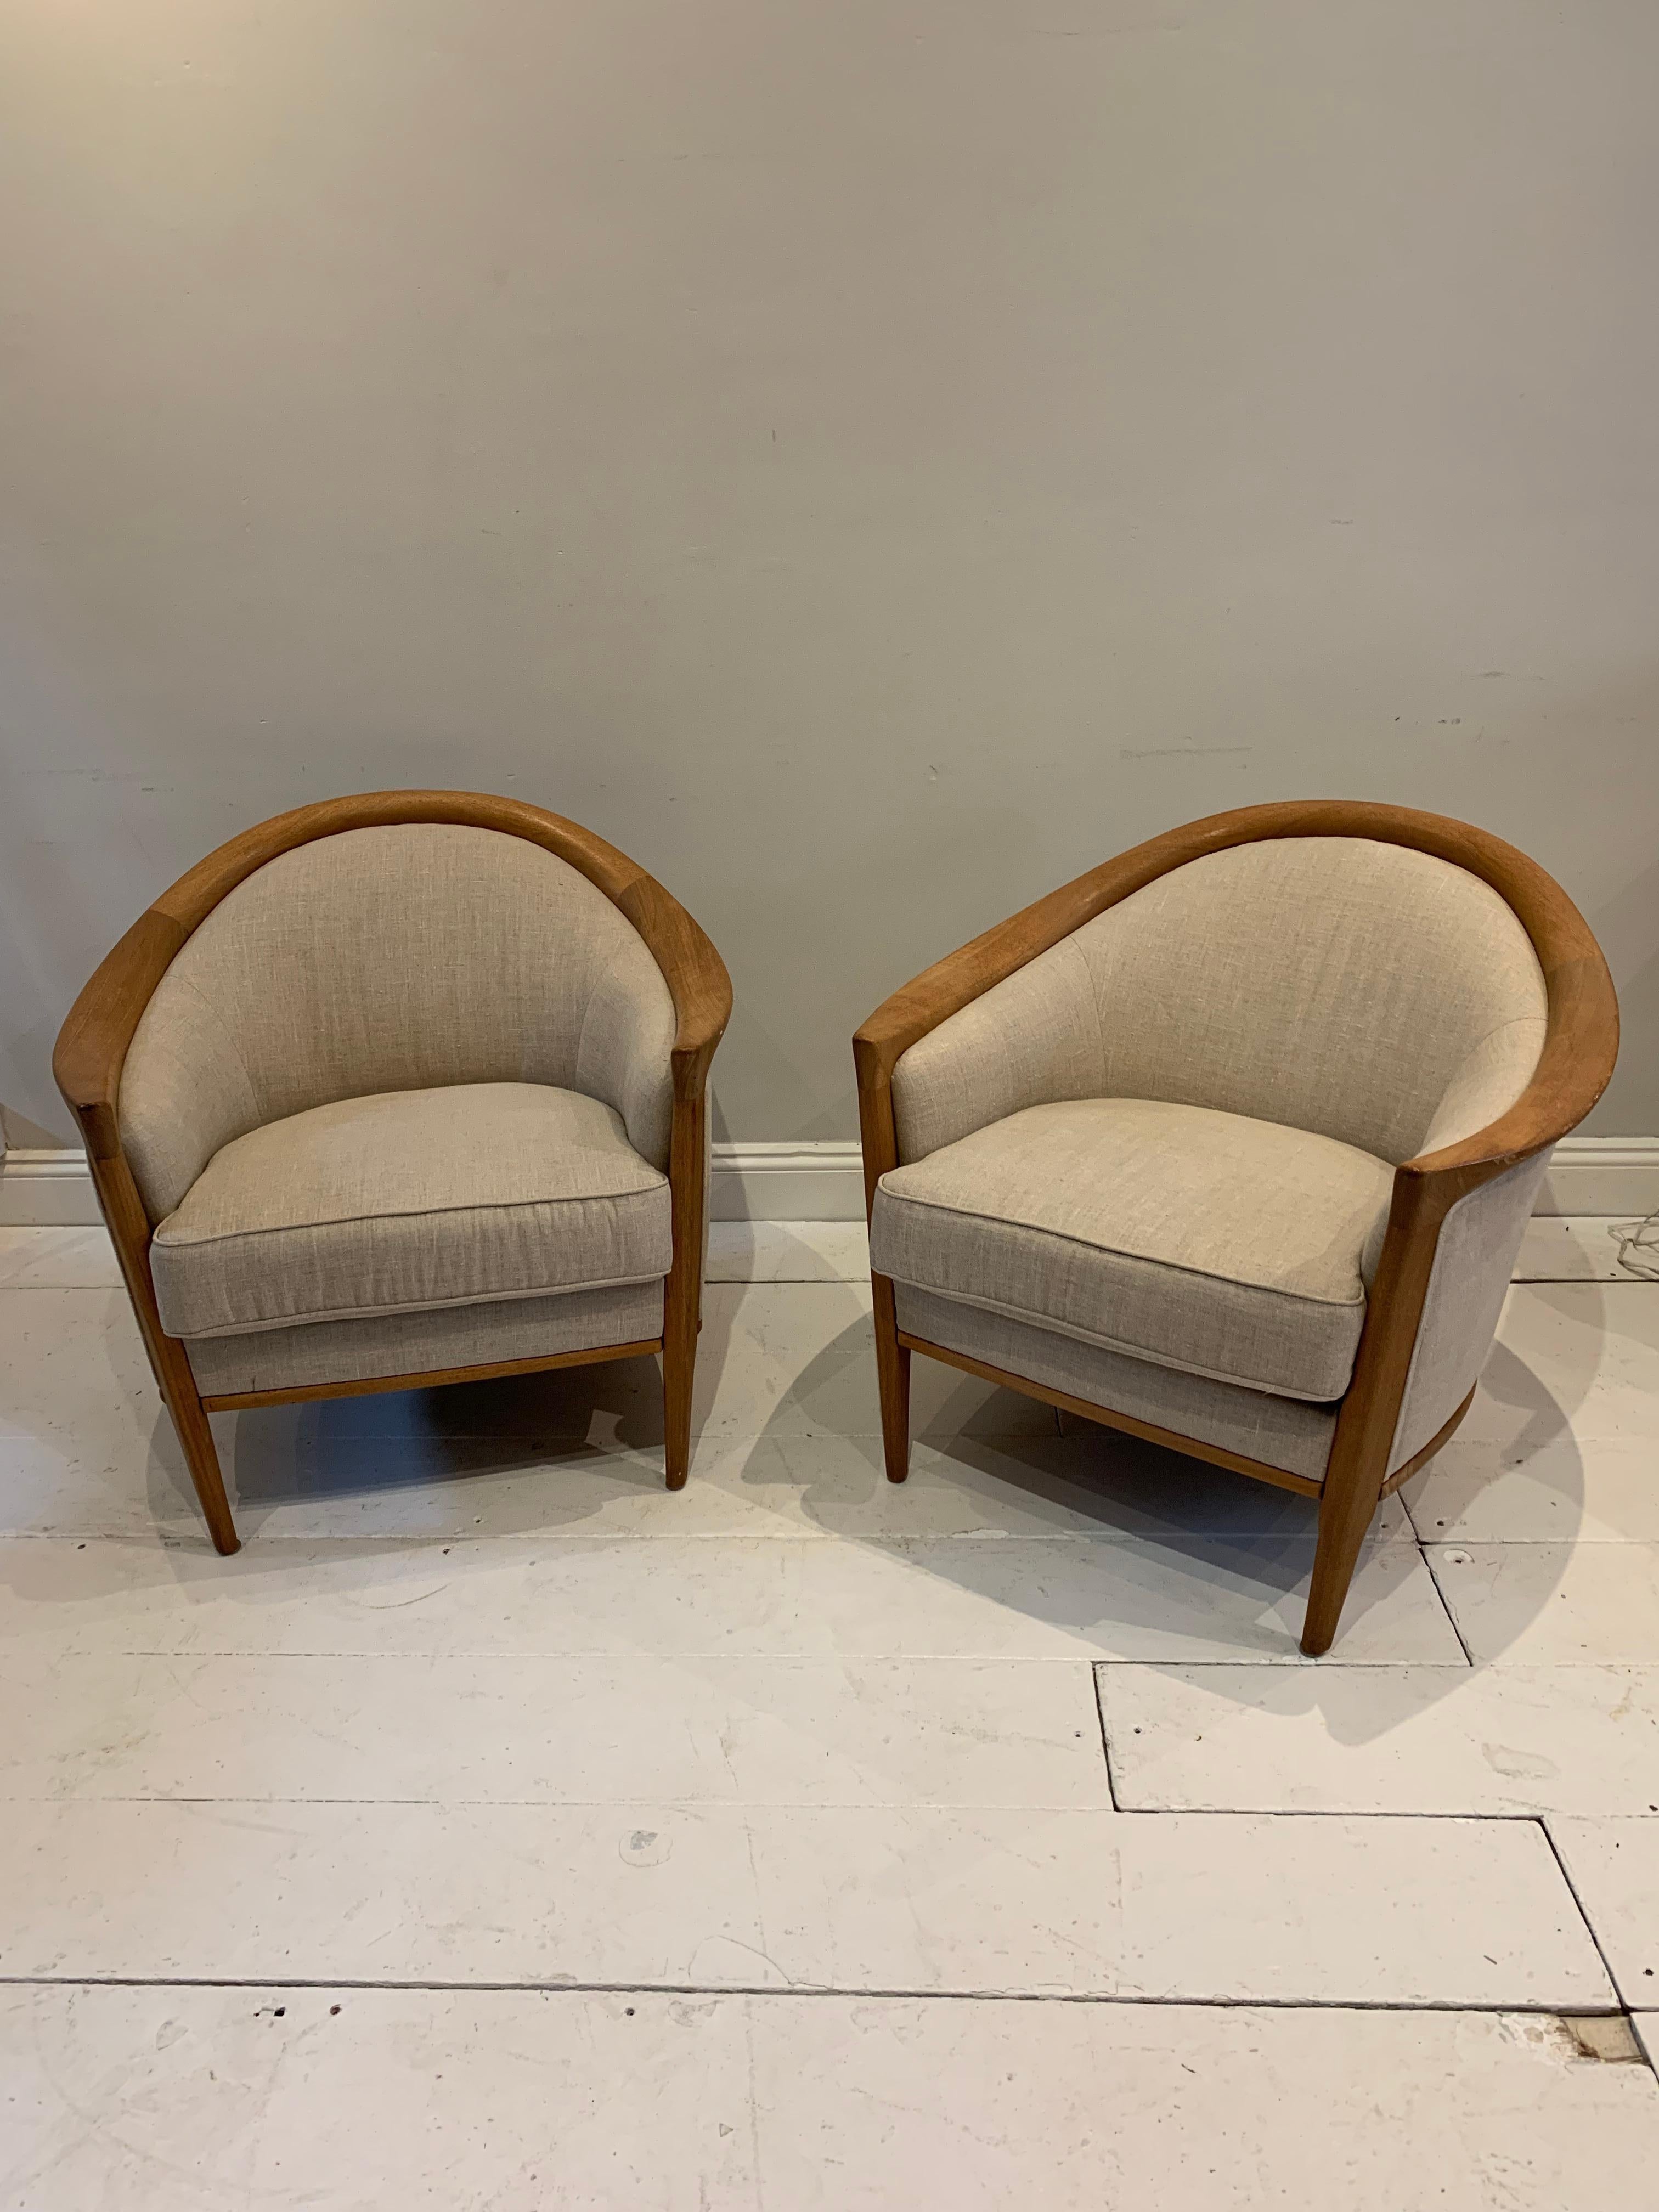 Ein stilvolles Paar sehr bequemer Sessel aus schwedischer Eiche.  Es gibt einen sehr kleinen Unterschied in der Größe, der kaum spürbar ist.
Die Rückenlehnen sind tief und geschwungen mit dicken Kissen.  Das Holz hat eine dunkle Honigfarbe.  Die